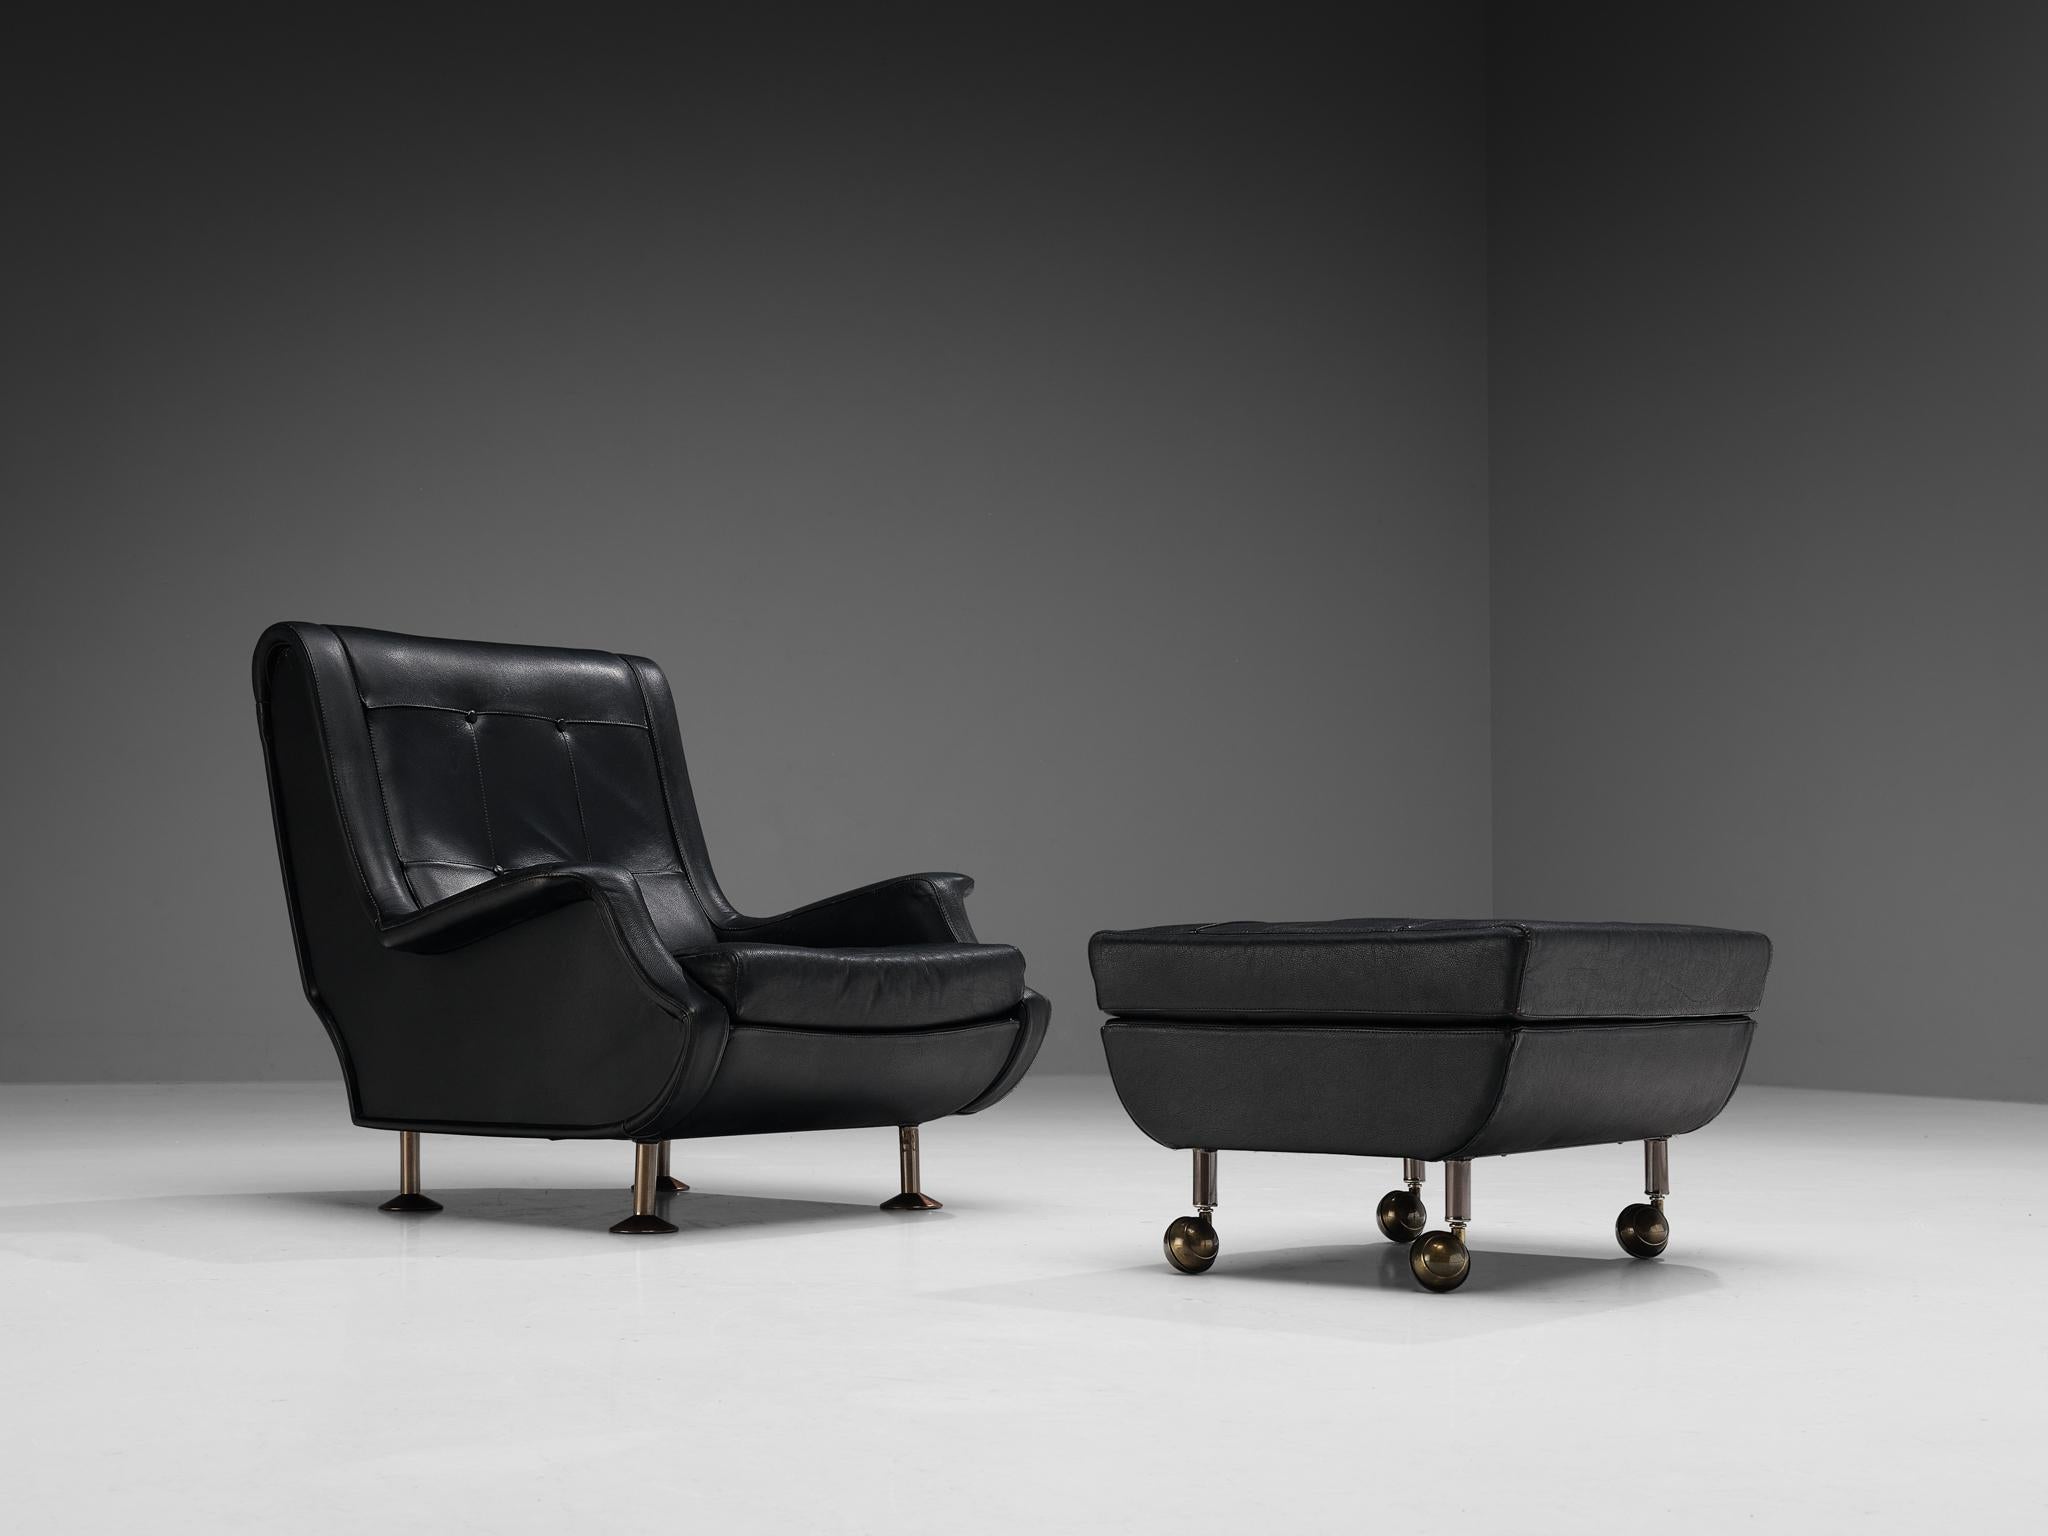 Marco Zanuso pour Arflex, chaise longue et ottoman modèle 'Regent', cuir, métal, Italie, créé en 1960

Cette admirable chaise longue baptisée 